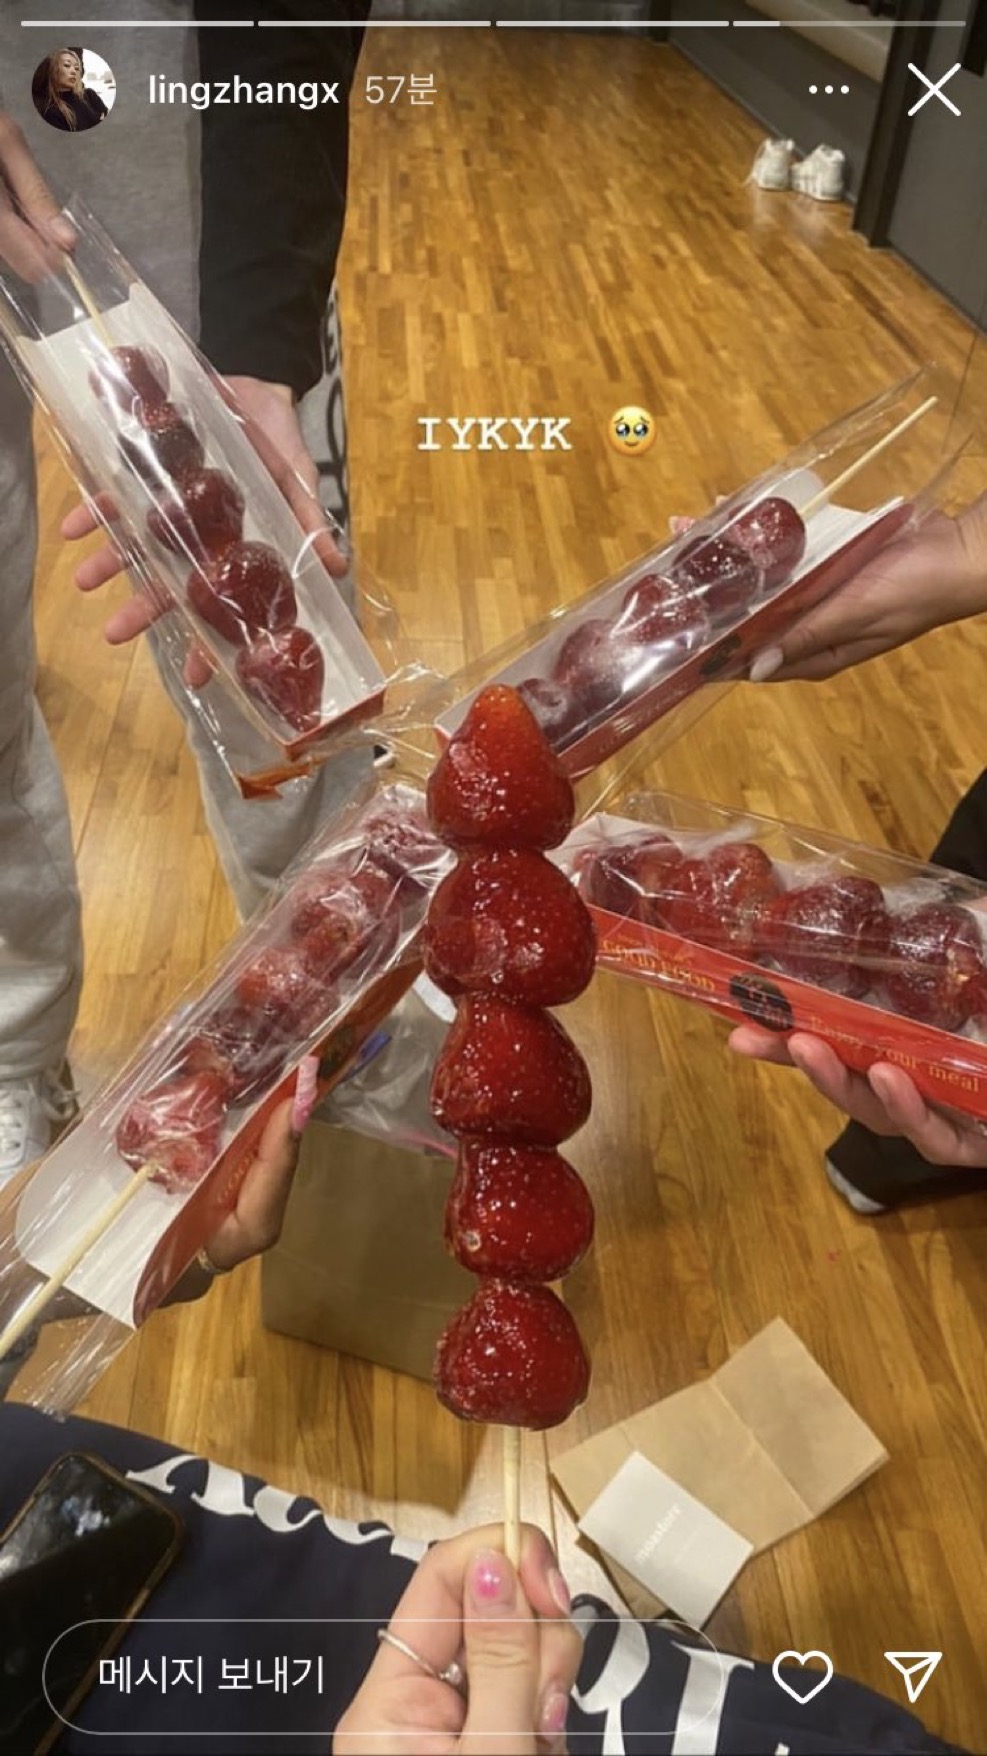 南韩掀起糖葫芦热，许多人赶热潮一起吃，例牌「相机食先」。 Instagram